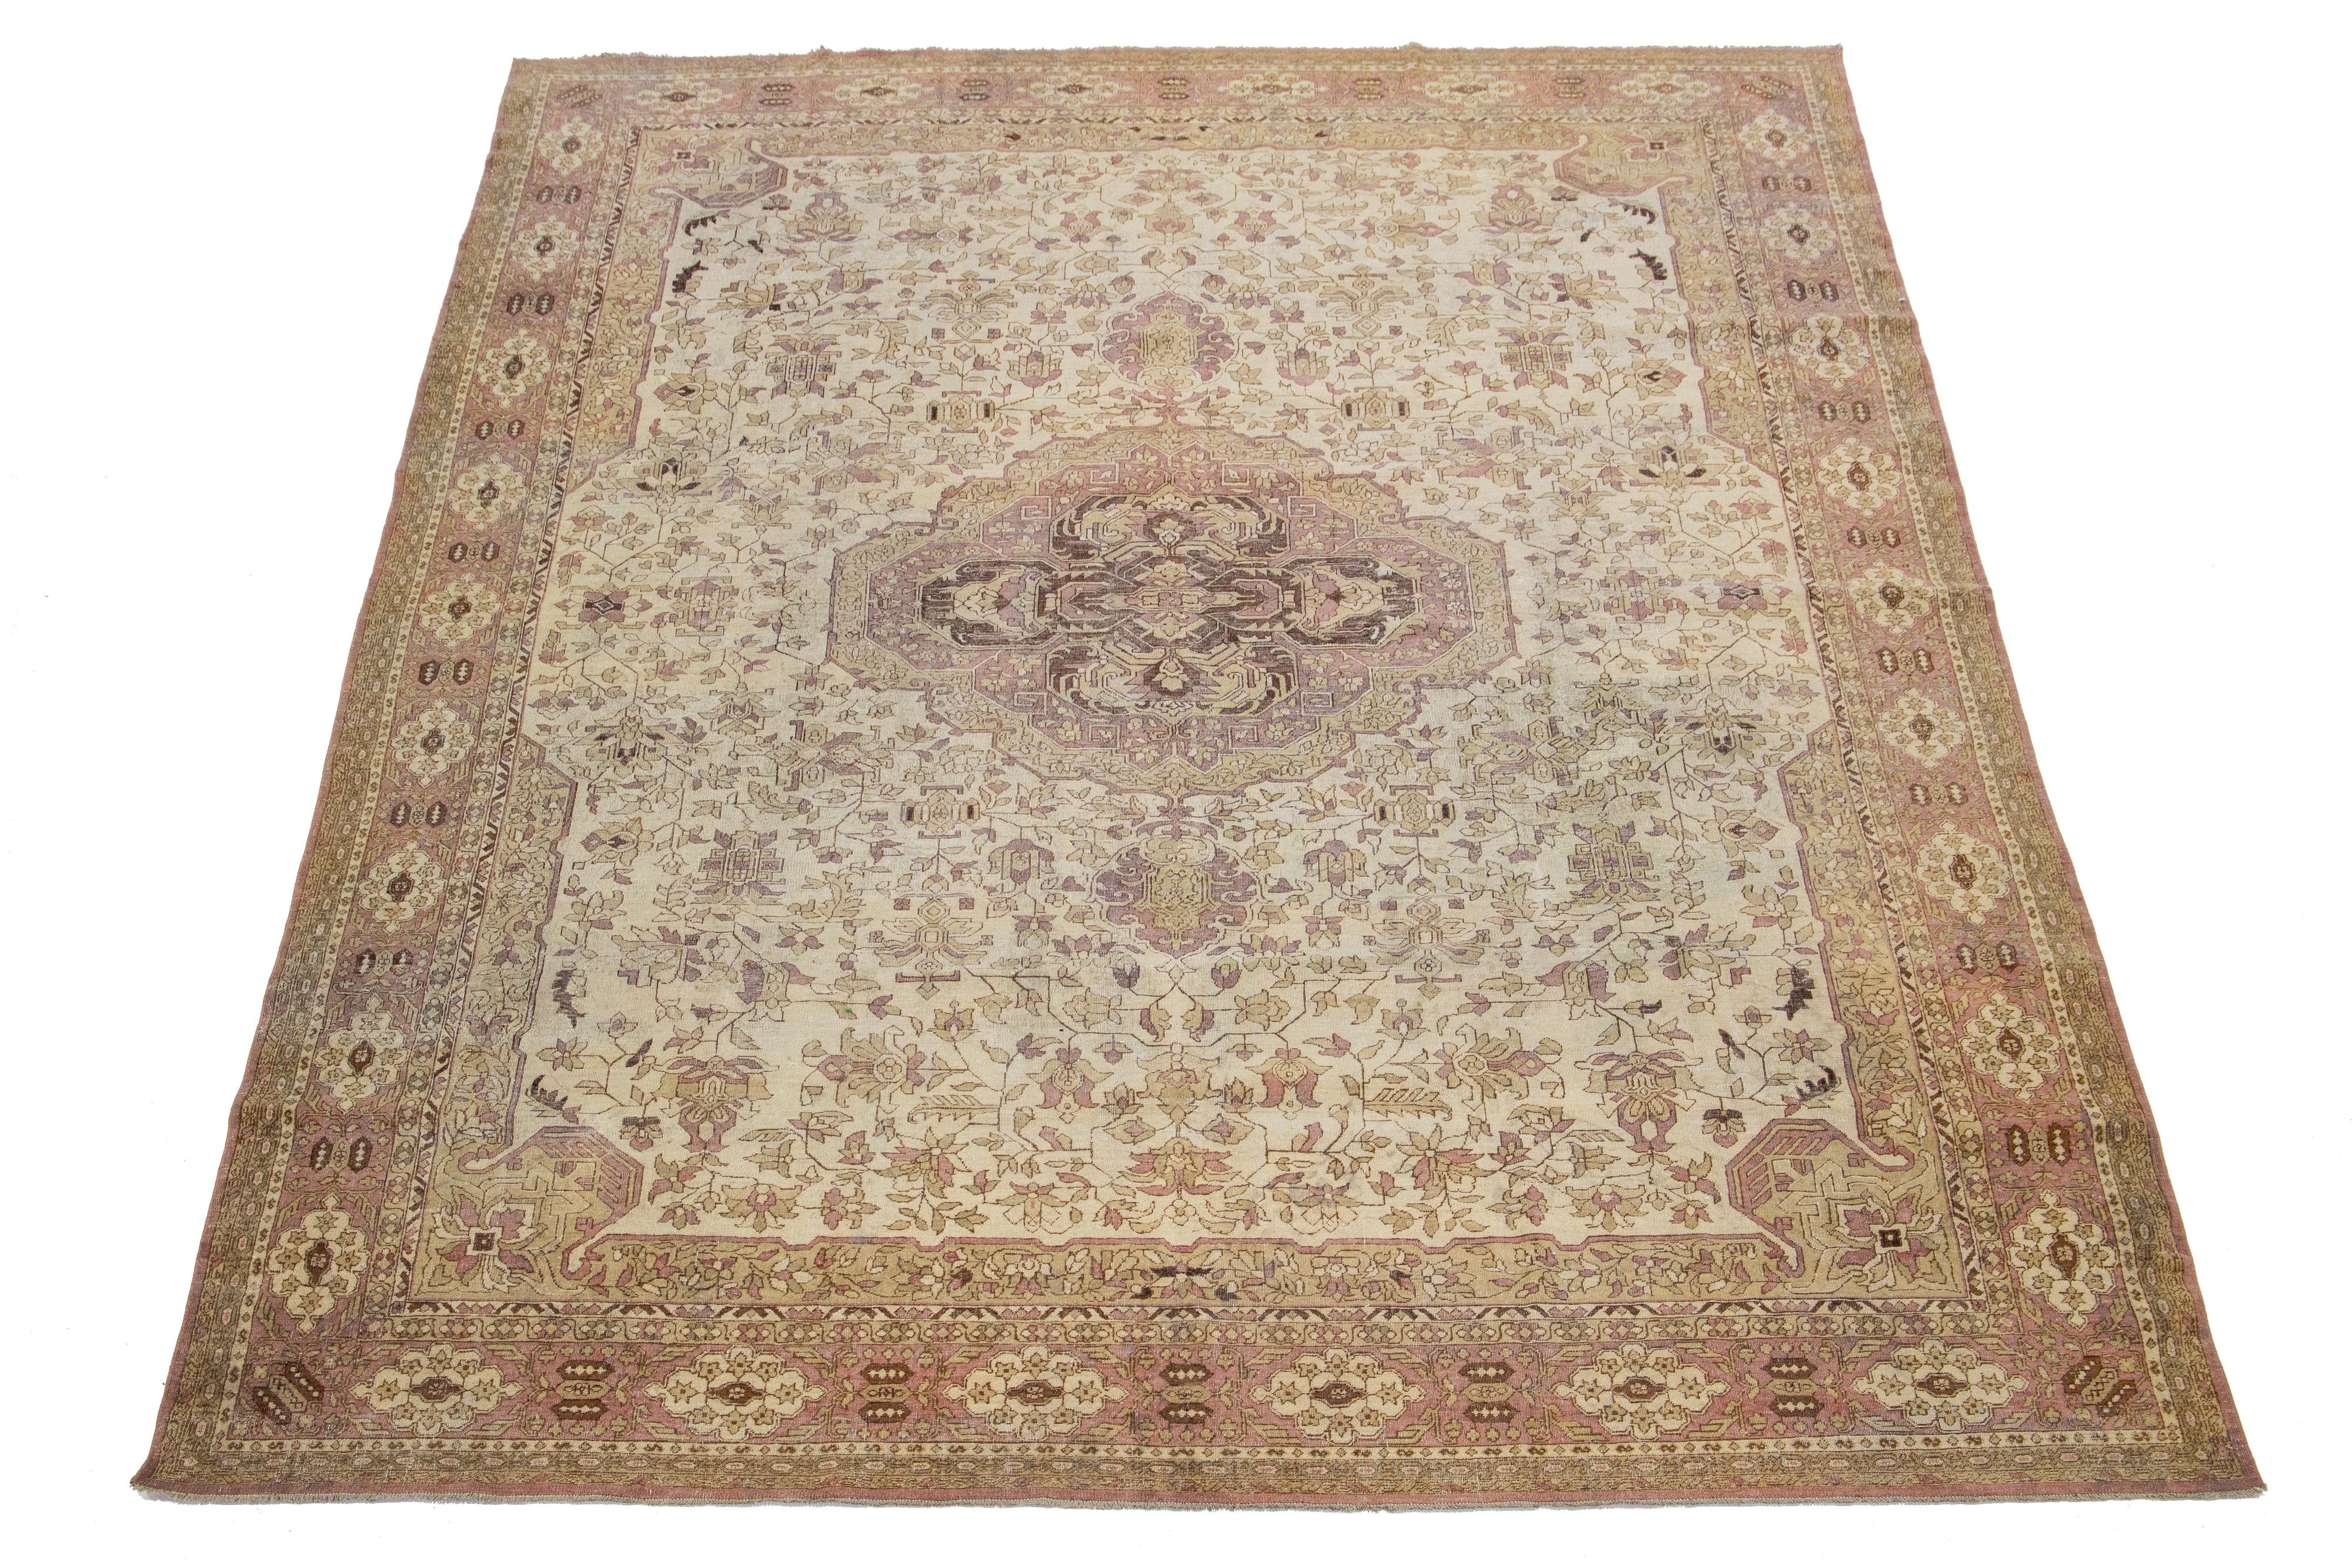 Dieser exquisite, handgeknüpfte Teppich aus Agra-Wolle zeichnet sich durch ein beigefarbenes Feld aus, das von braunen und terrakottafarbenen Motiven in einem zeitlosen floralen Medaillonmuster akzentuiert wird.

Dieser Teppich misst 8'7